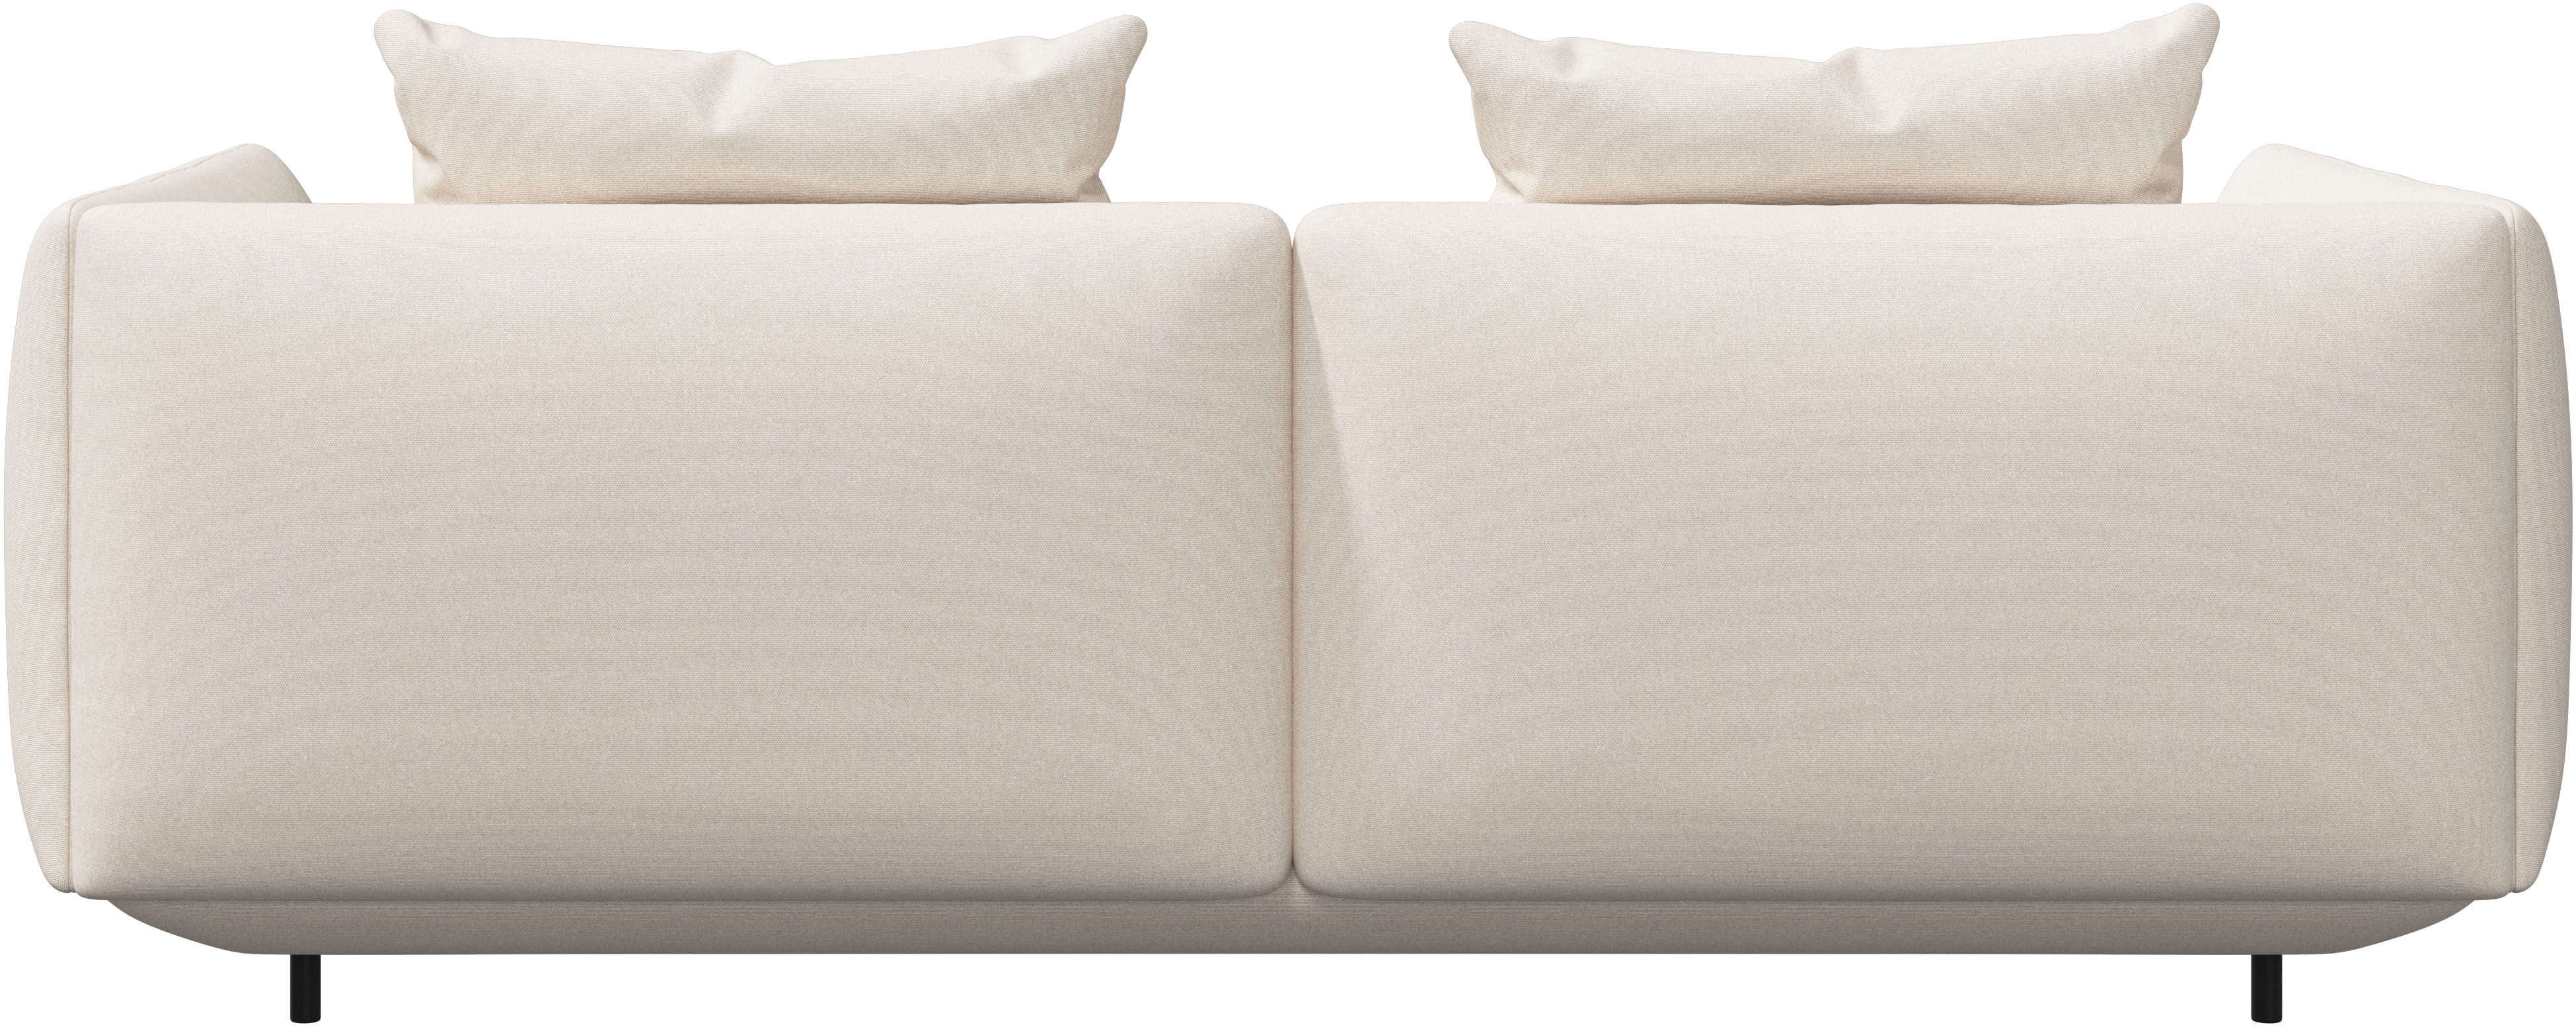 モジュール式デザイナーソファ | デンマークデザインの家具 - ホワイト | ボーコンセプト